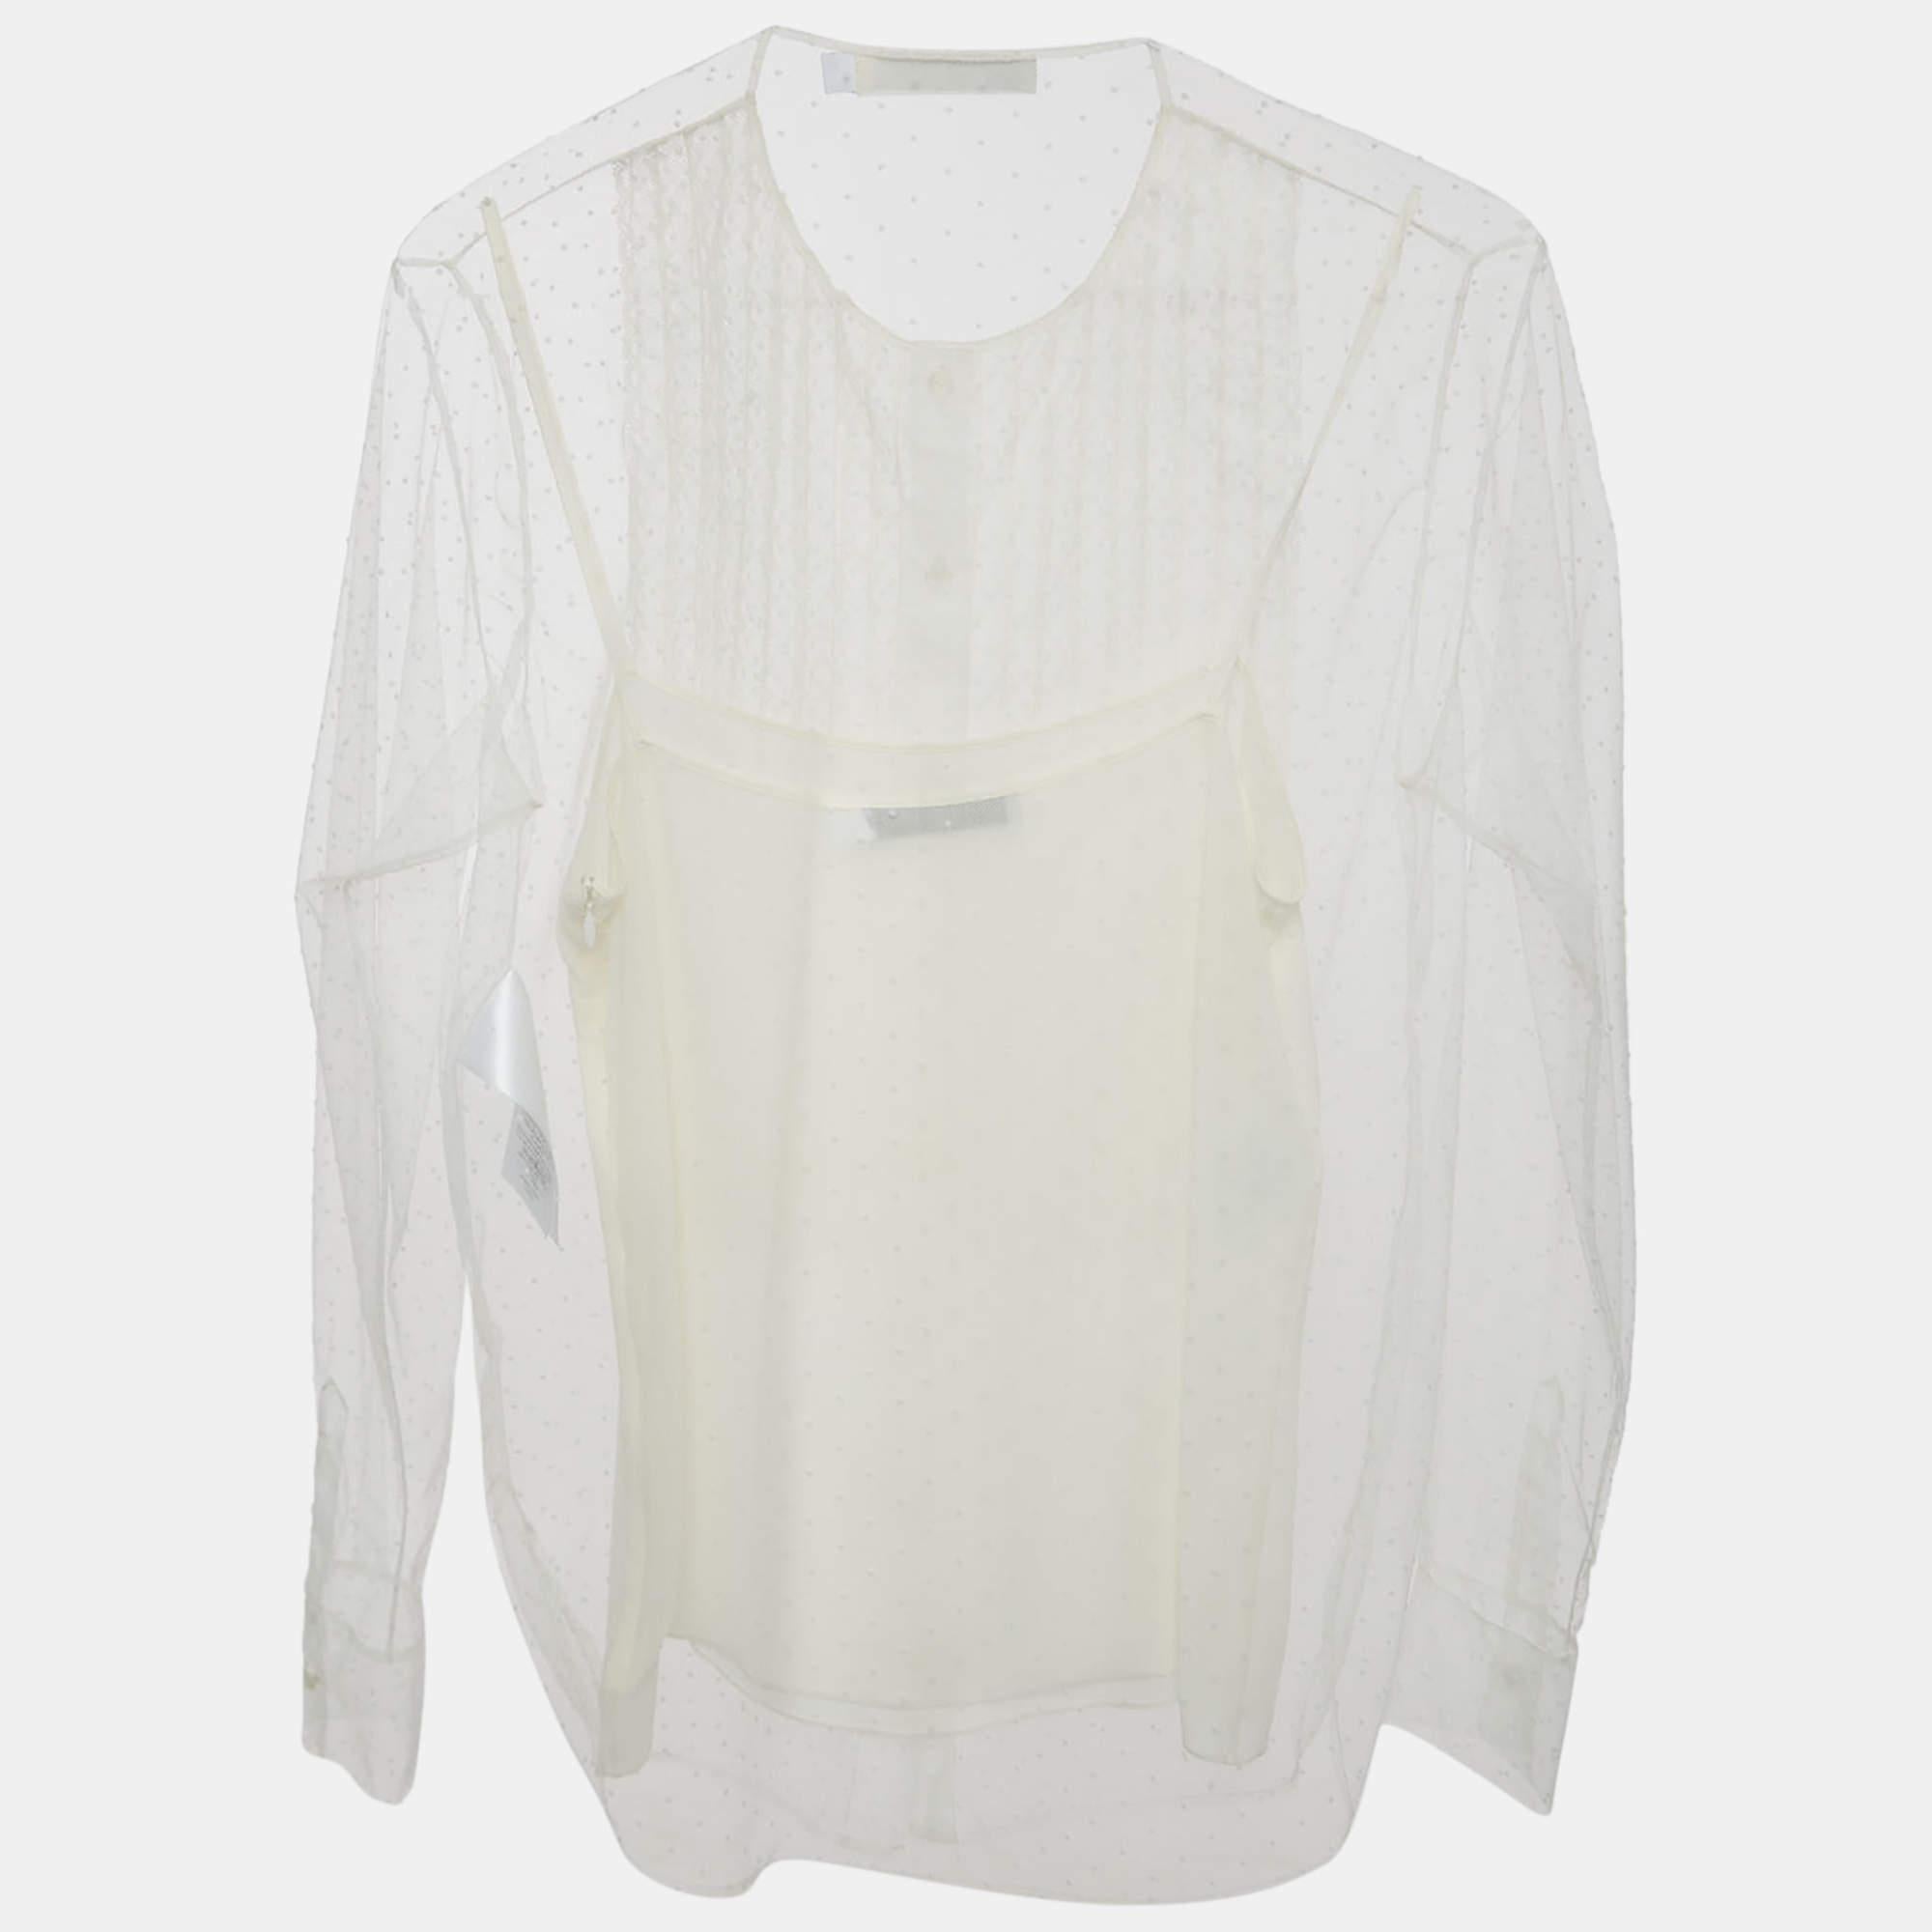 La blouse Christian Dior est un vêtement éthéré composé d'un délicat tulle blanc orné de points subtils et élégants. Cette blouse allie un design intemporel à une grâce moderne, mettant en valeur le savoir-faire emblématique de Dior. Son tissu